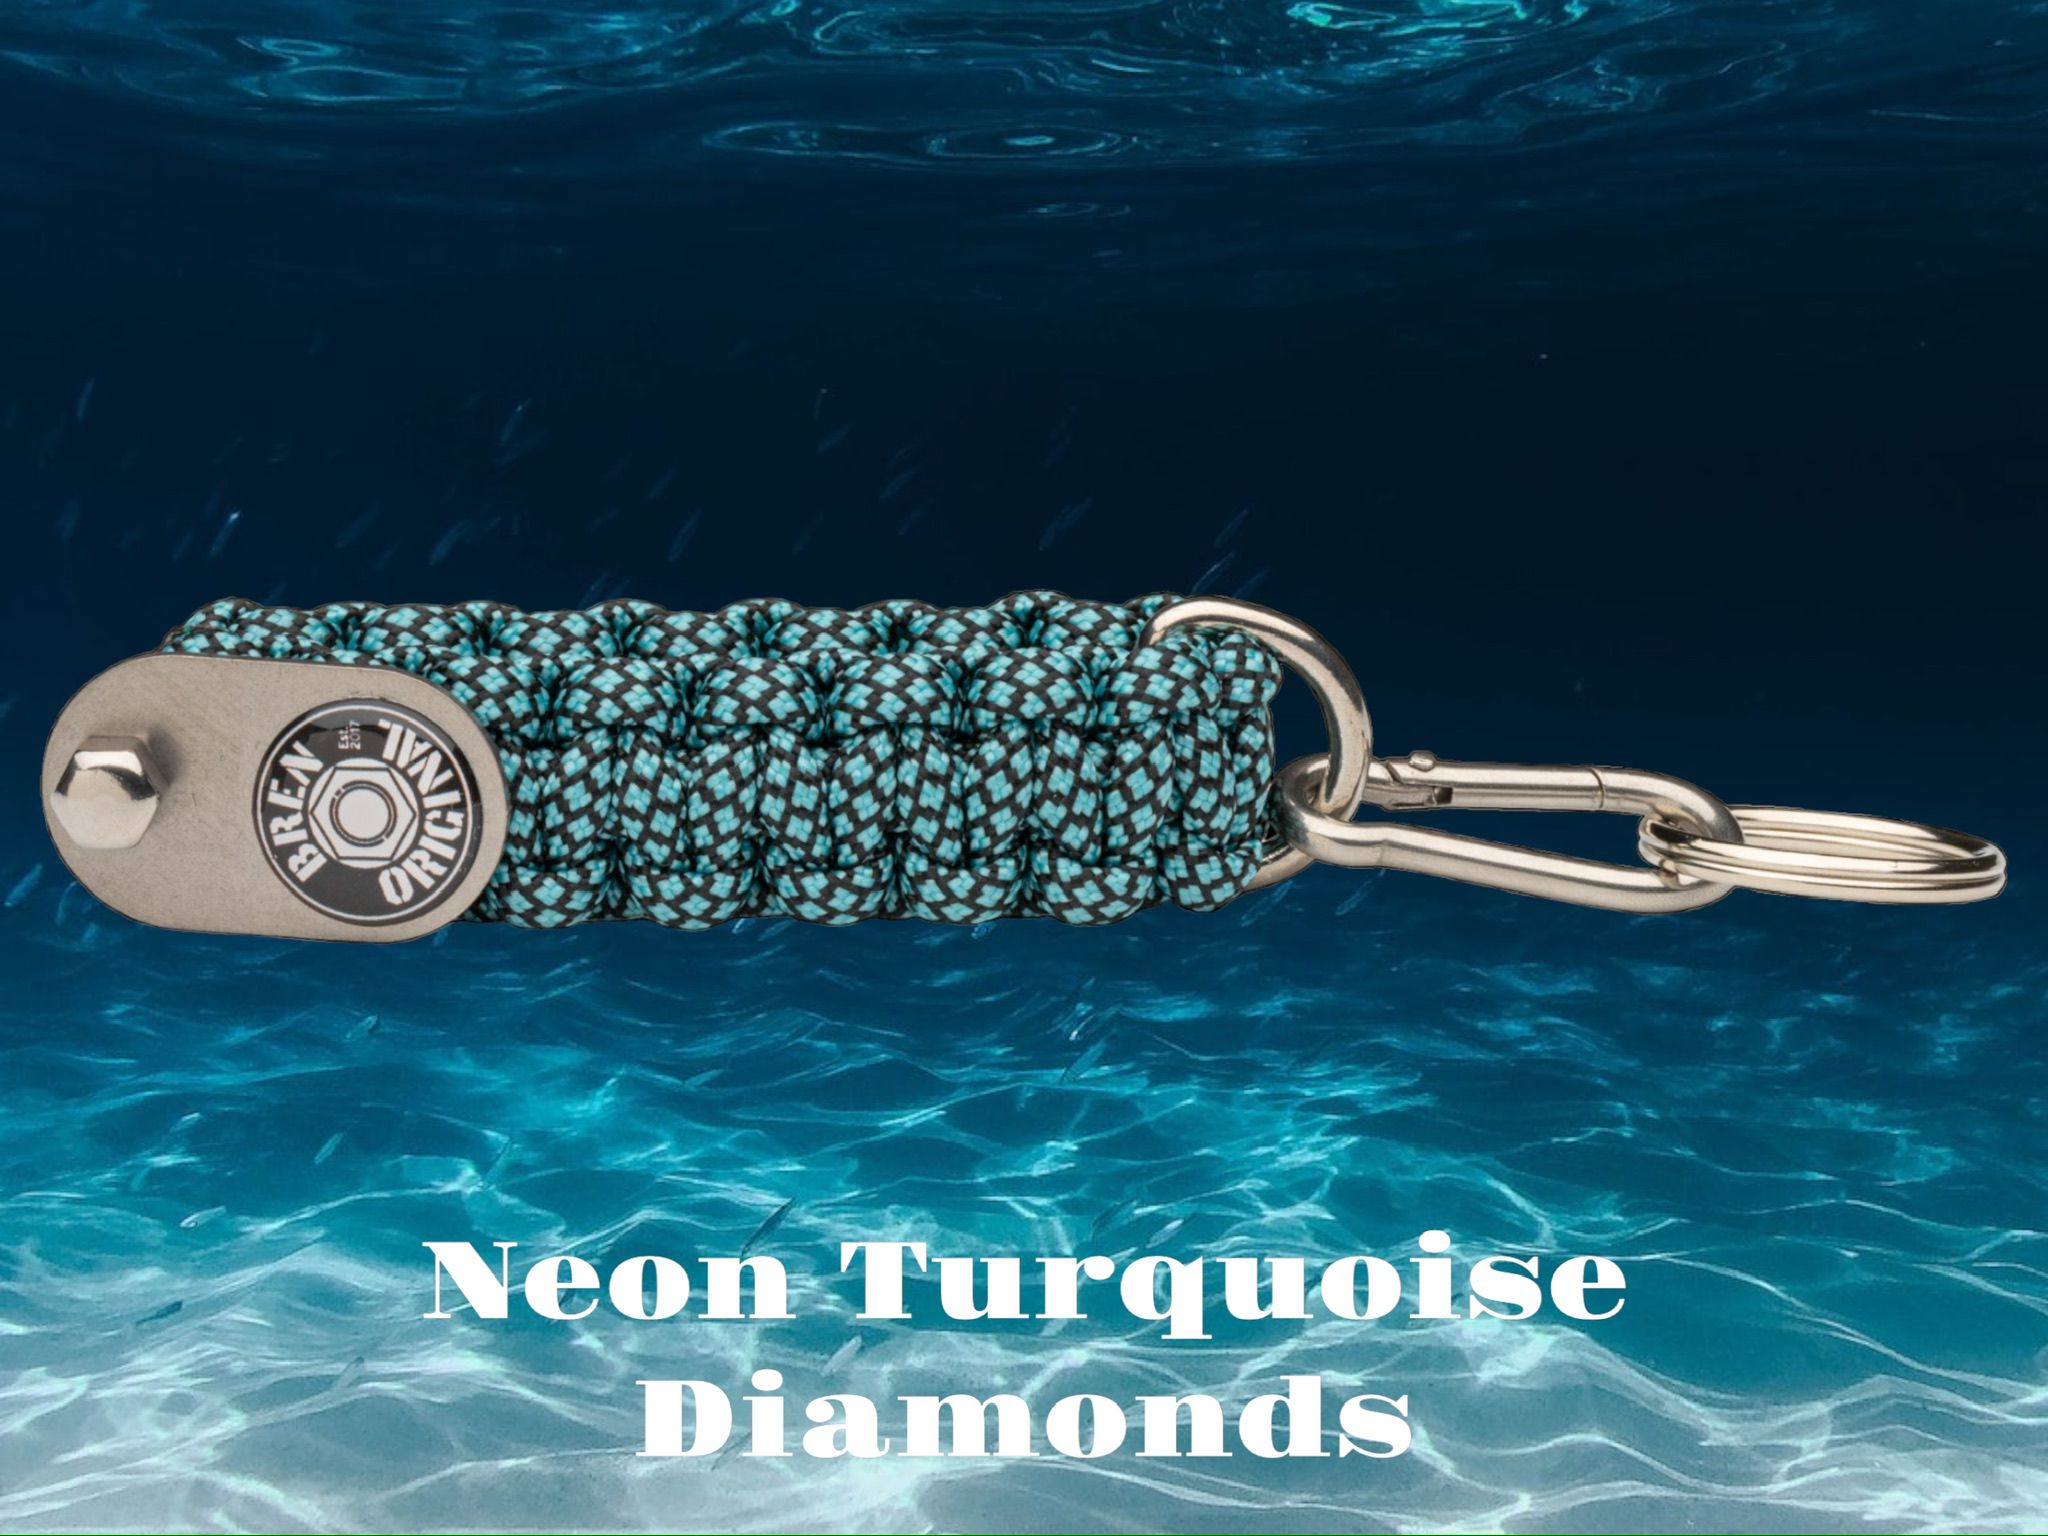 Neon Turquoise Diamonds